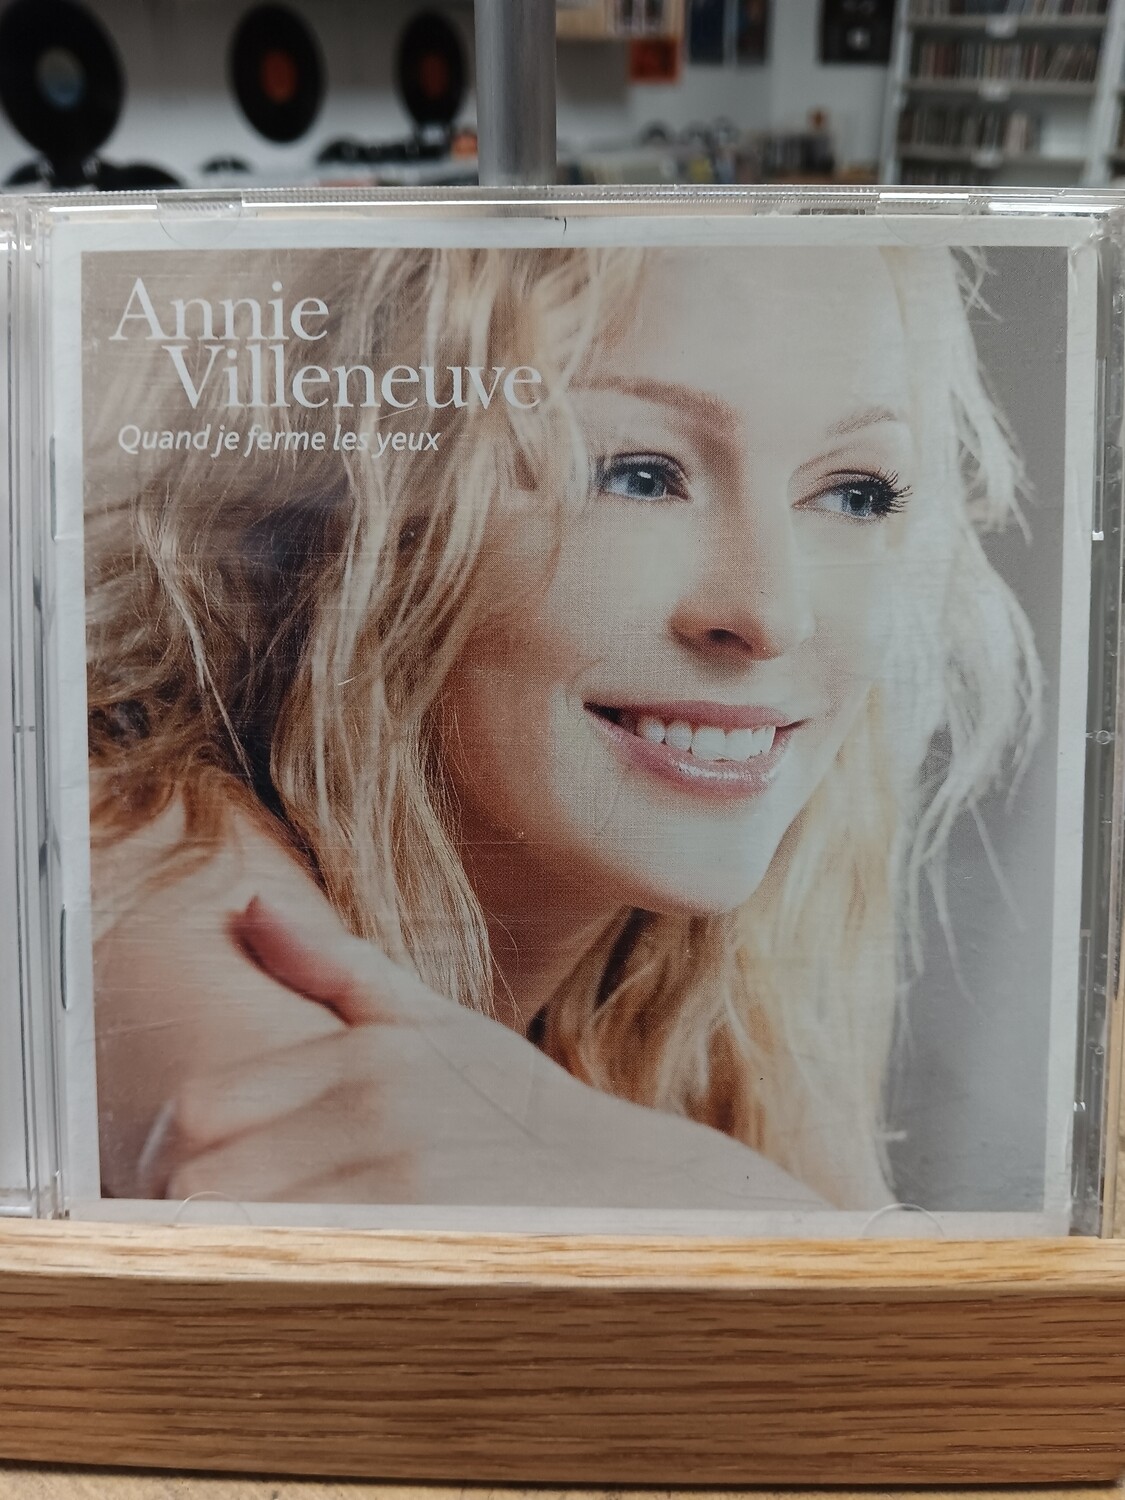 ANNIE VILLENEUVE - Quand je ferme les yeux (CD)